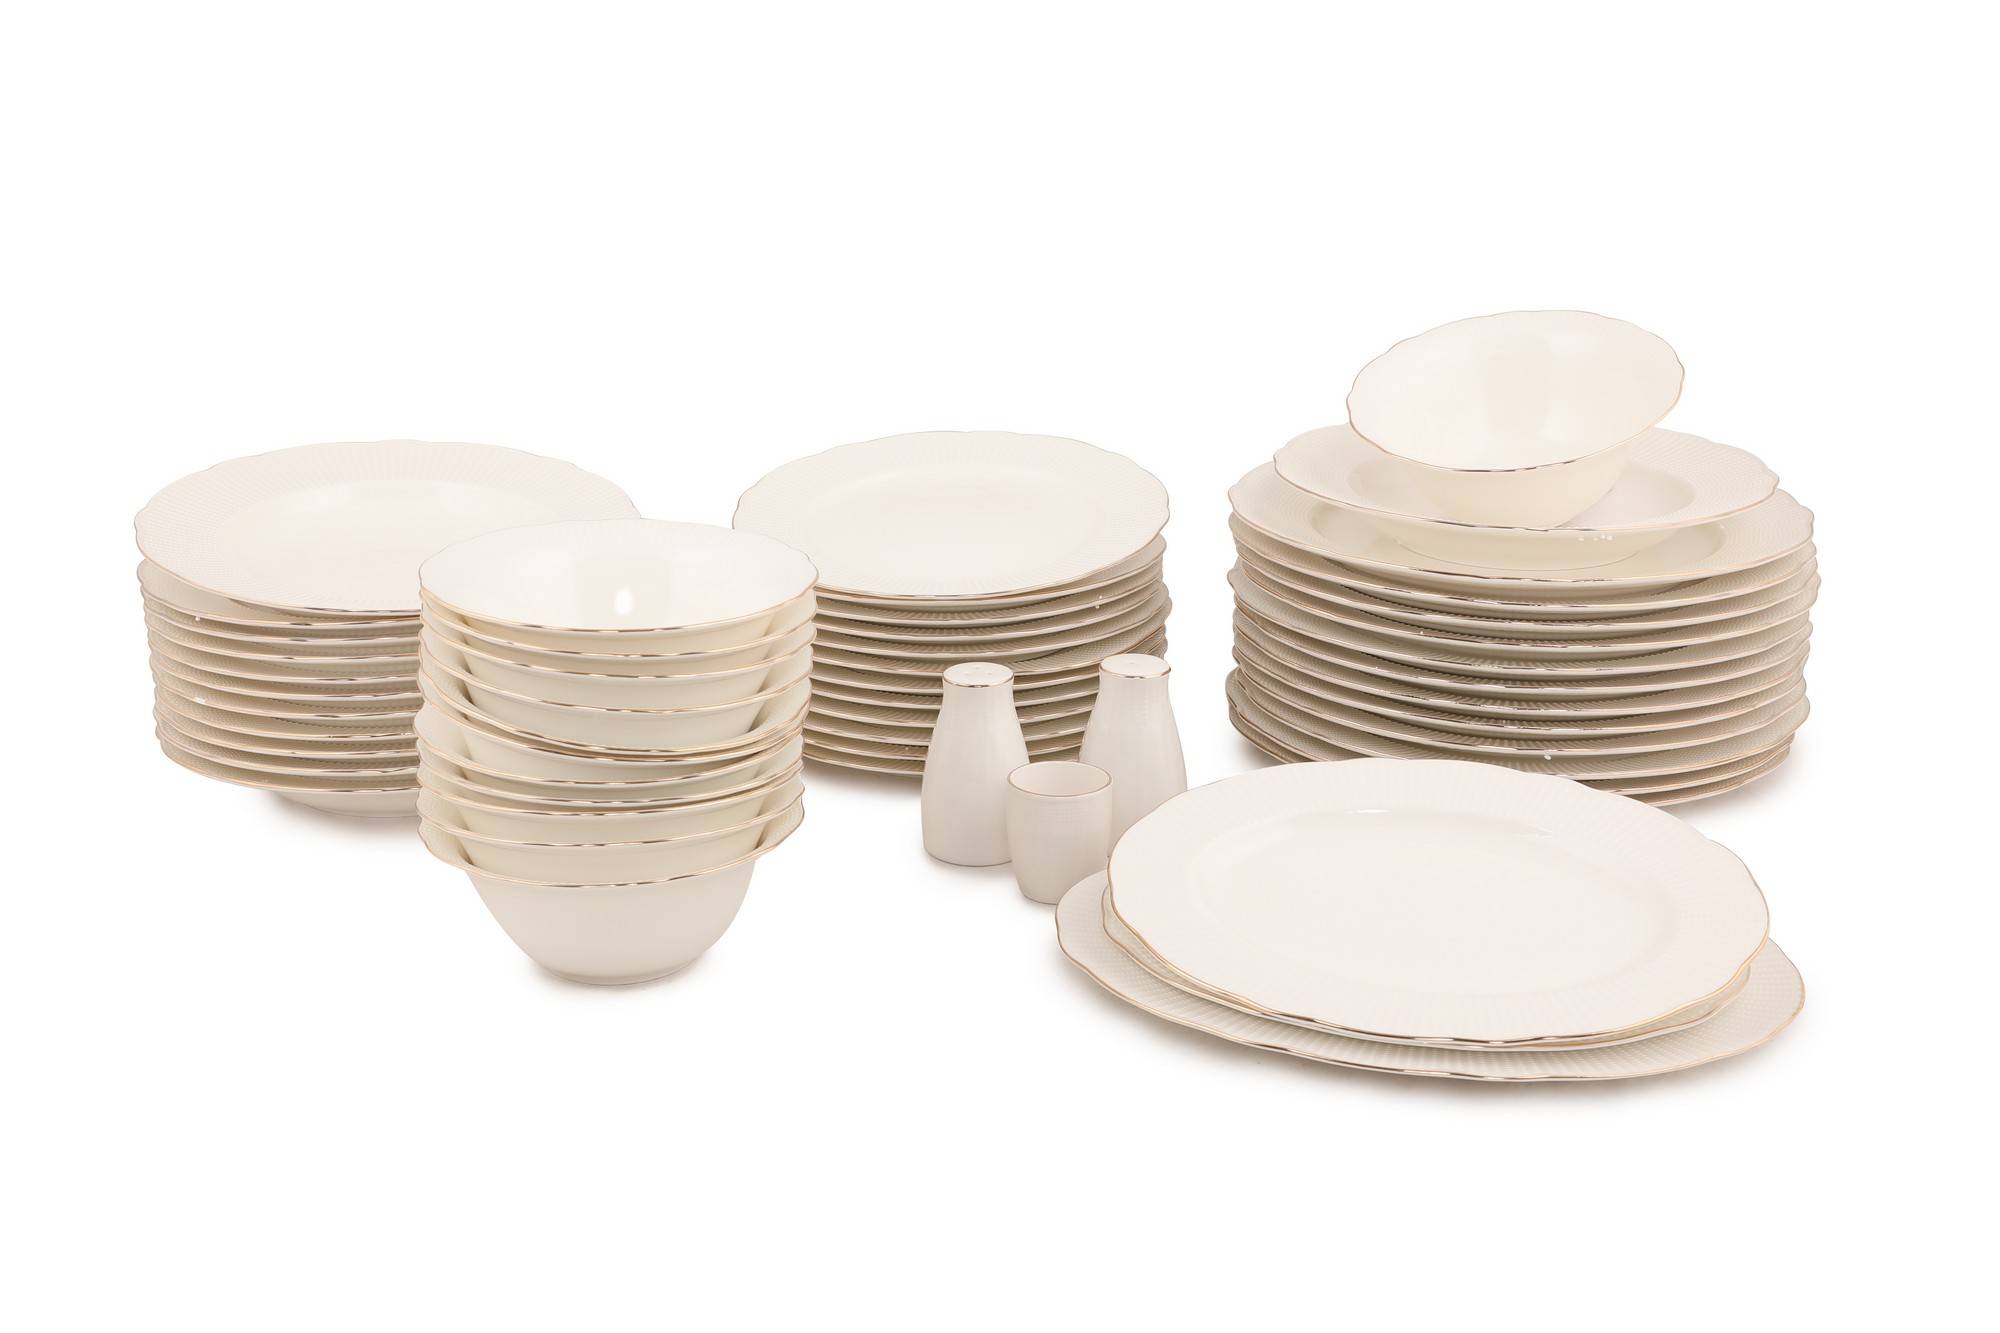 Service de table 69 pièces Antioco Porcelaine Blanc liseré Argent